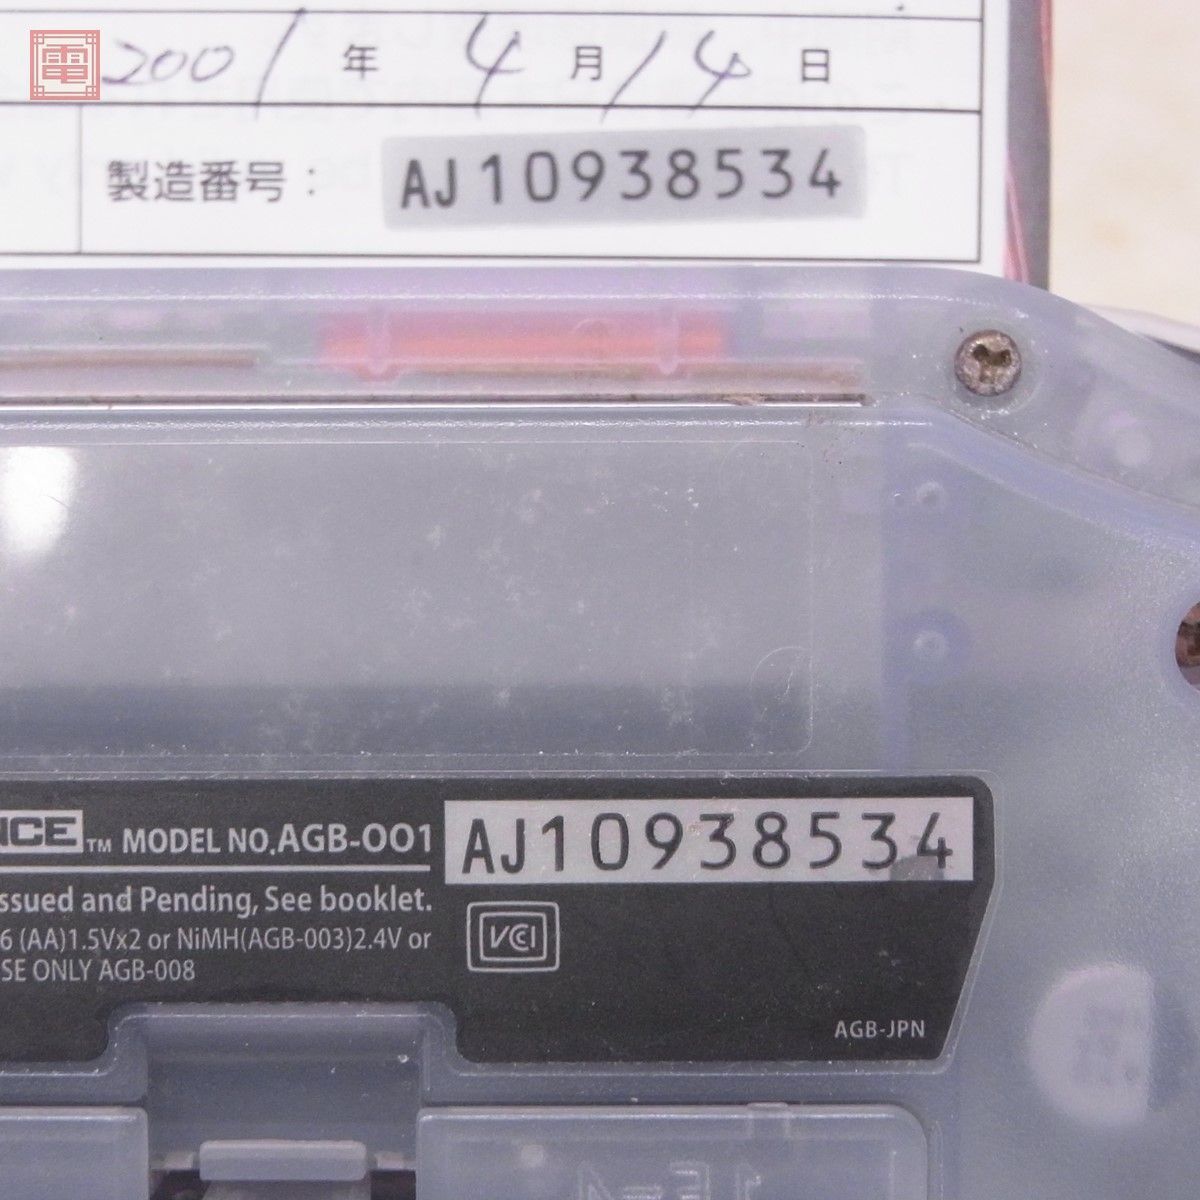  рабочий товар серийный совпадение GBA Game Boy Advance корпус AGB-001 Mill ключ голубой Nintendo nintendo Nintendo коробка мнение есть [10